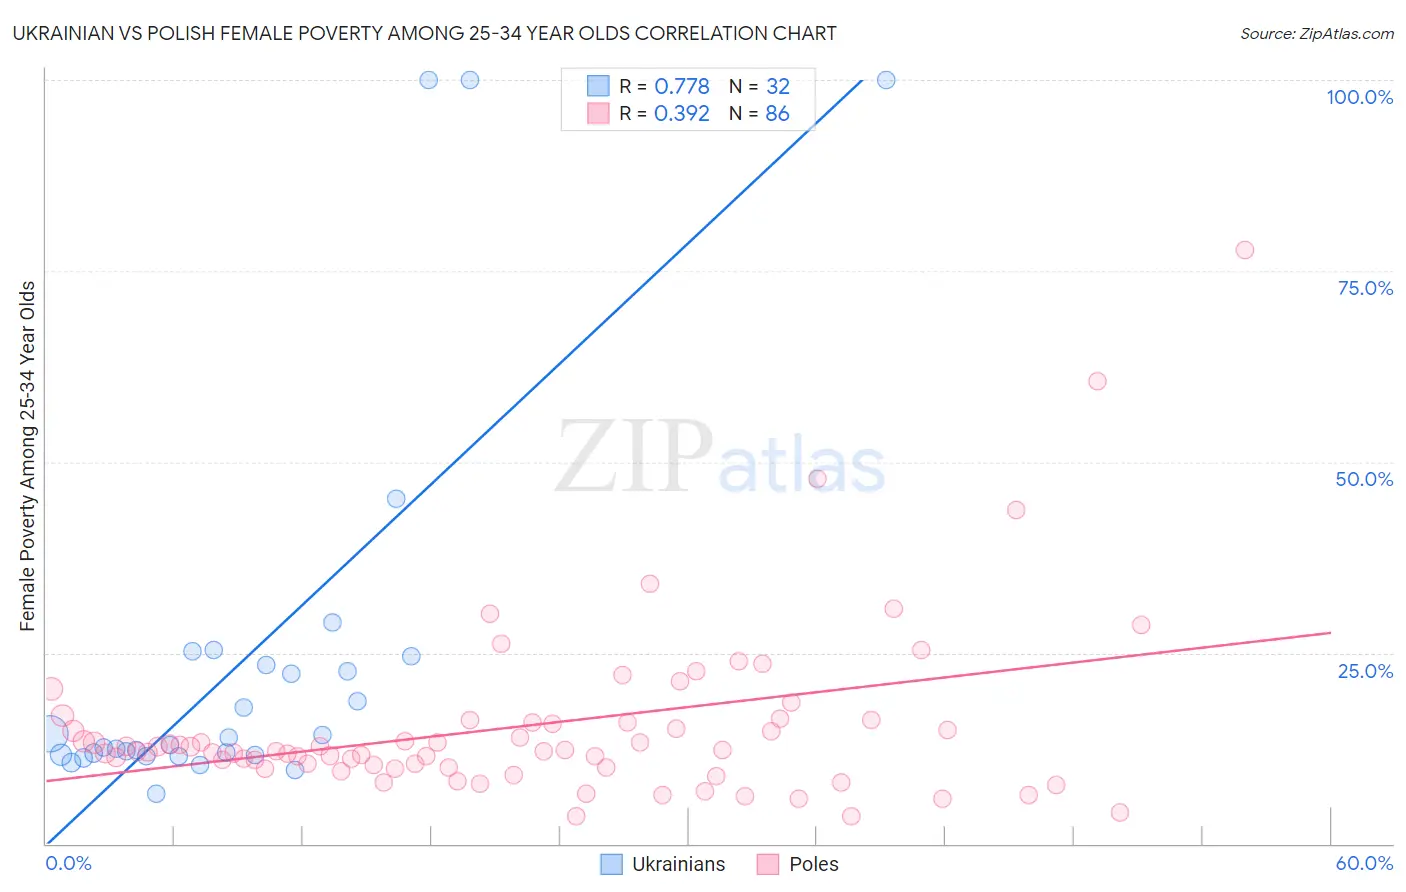 Ukrainian vs Polish Female Poverty Among 25-34 Year Olds